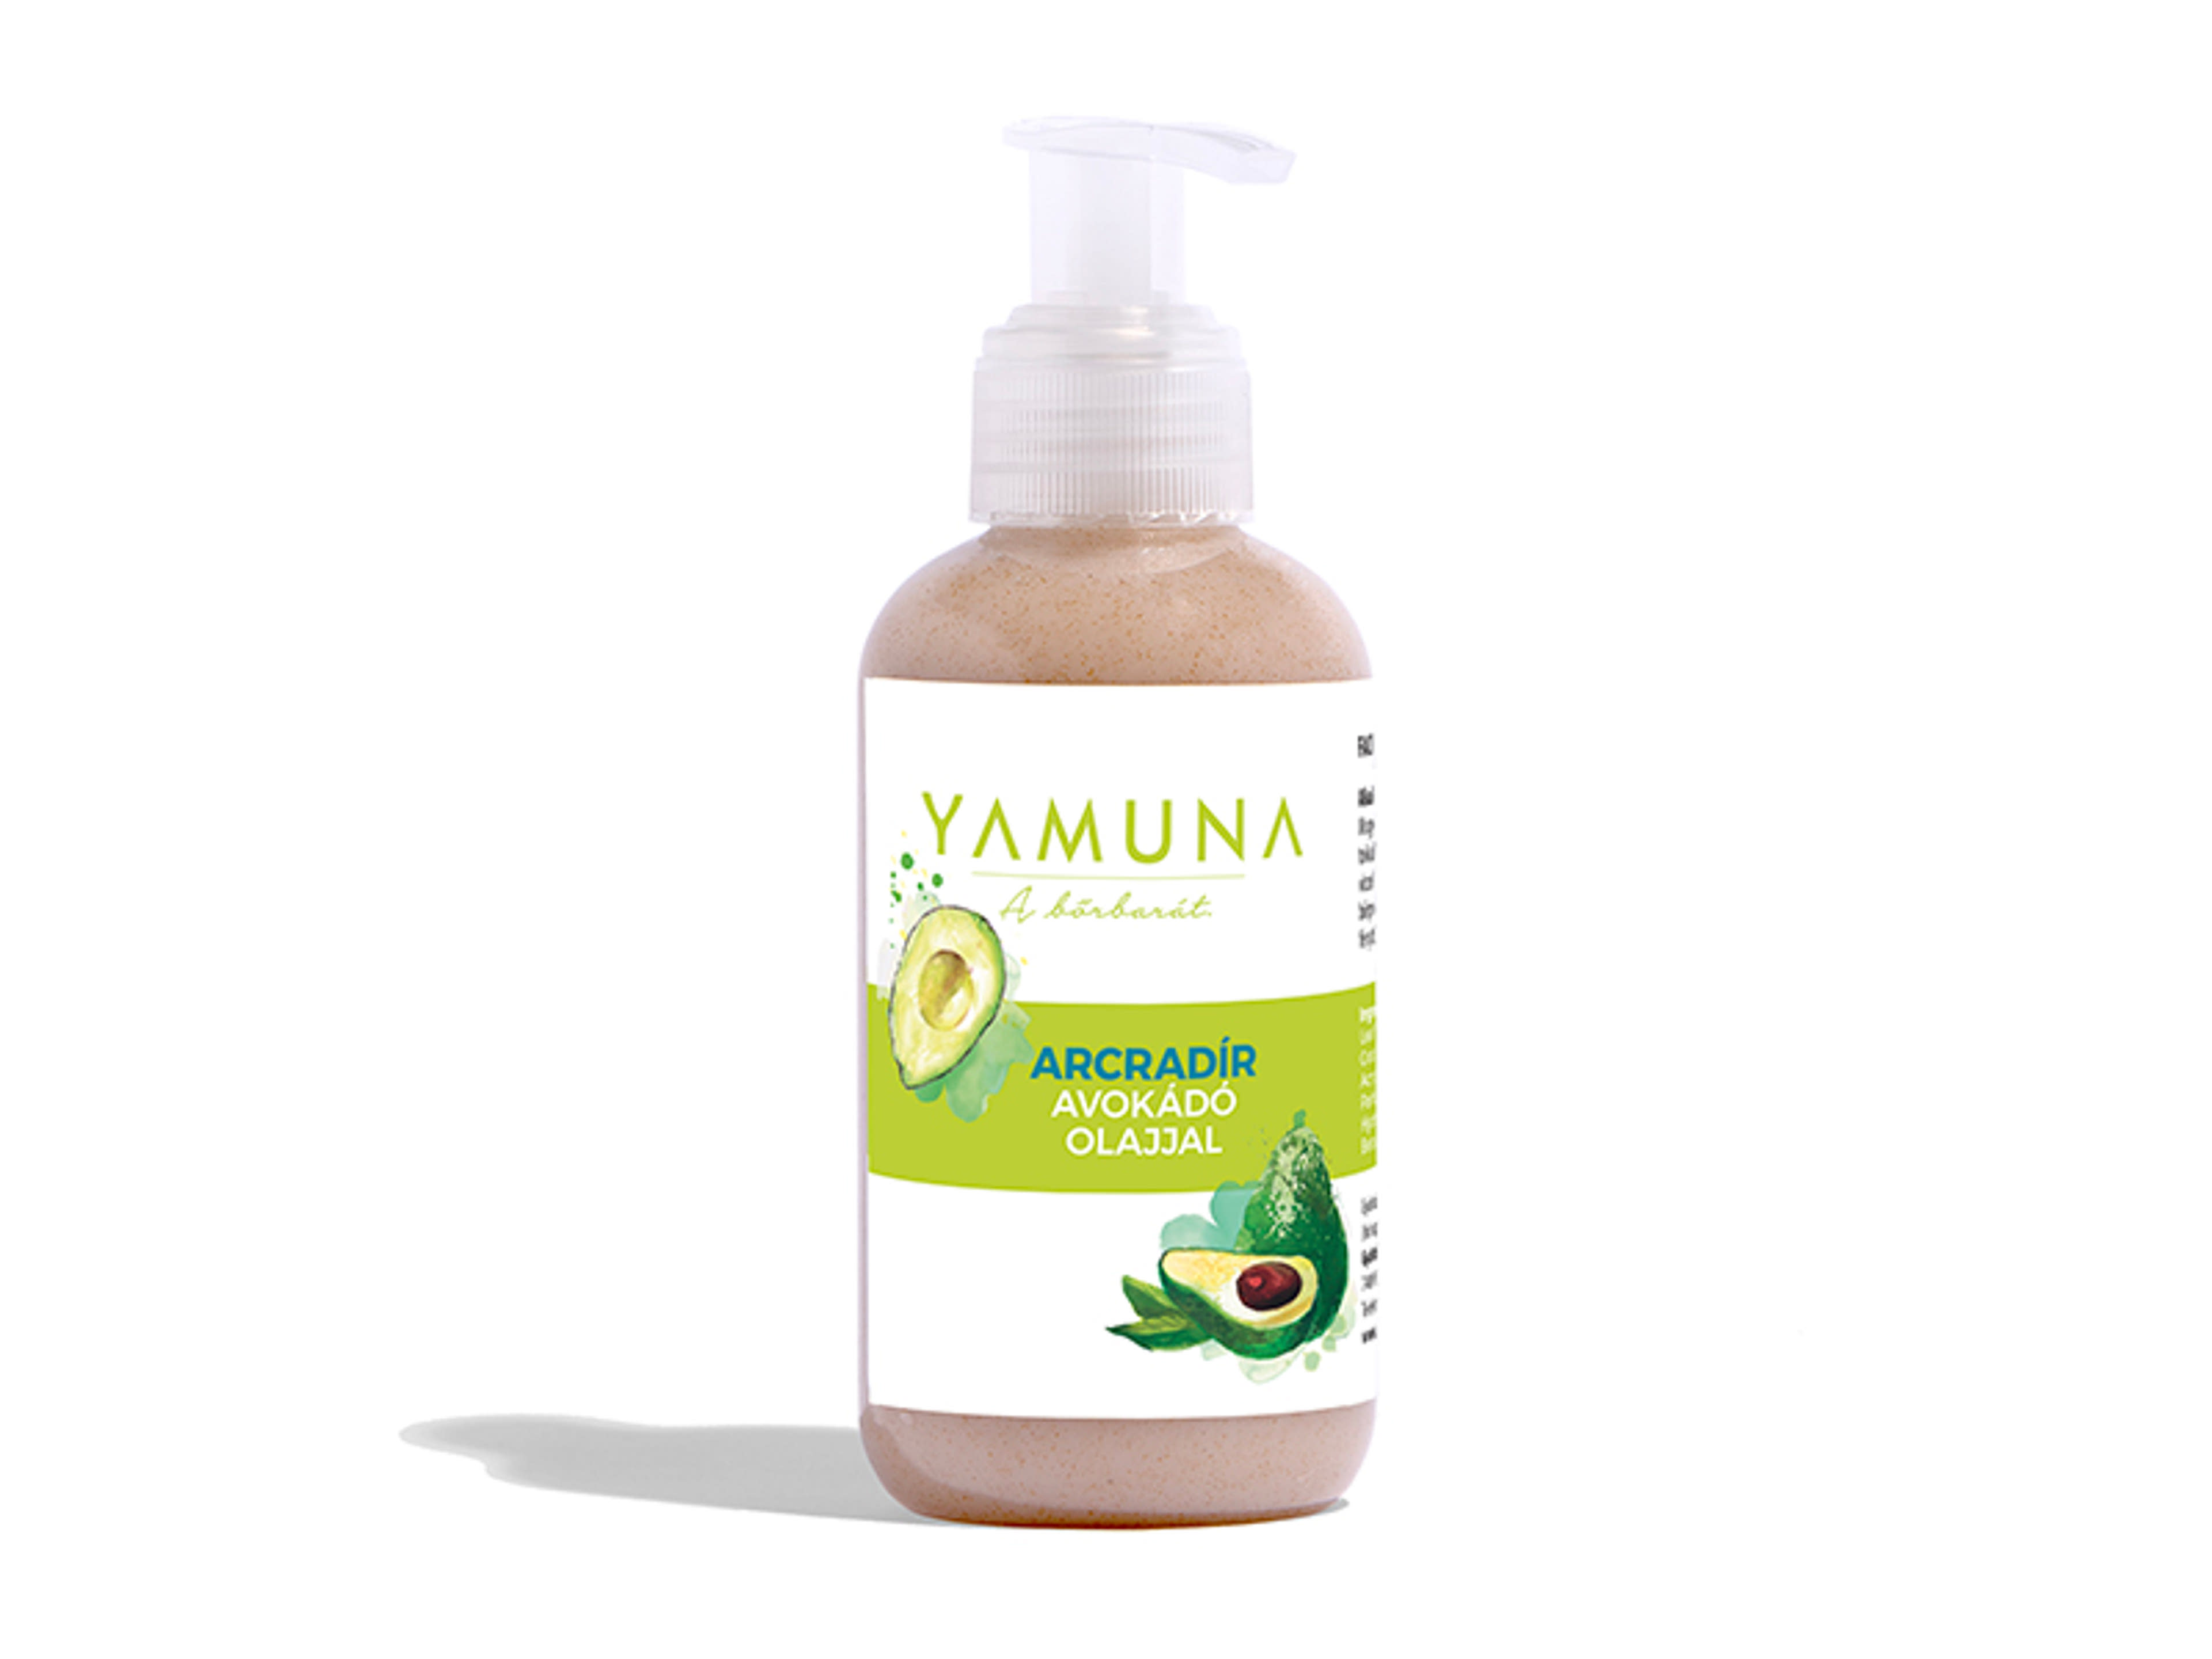 Yamuna arcradír avokádó olajjal - 150 ml-1